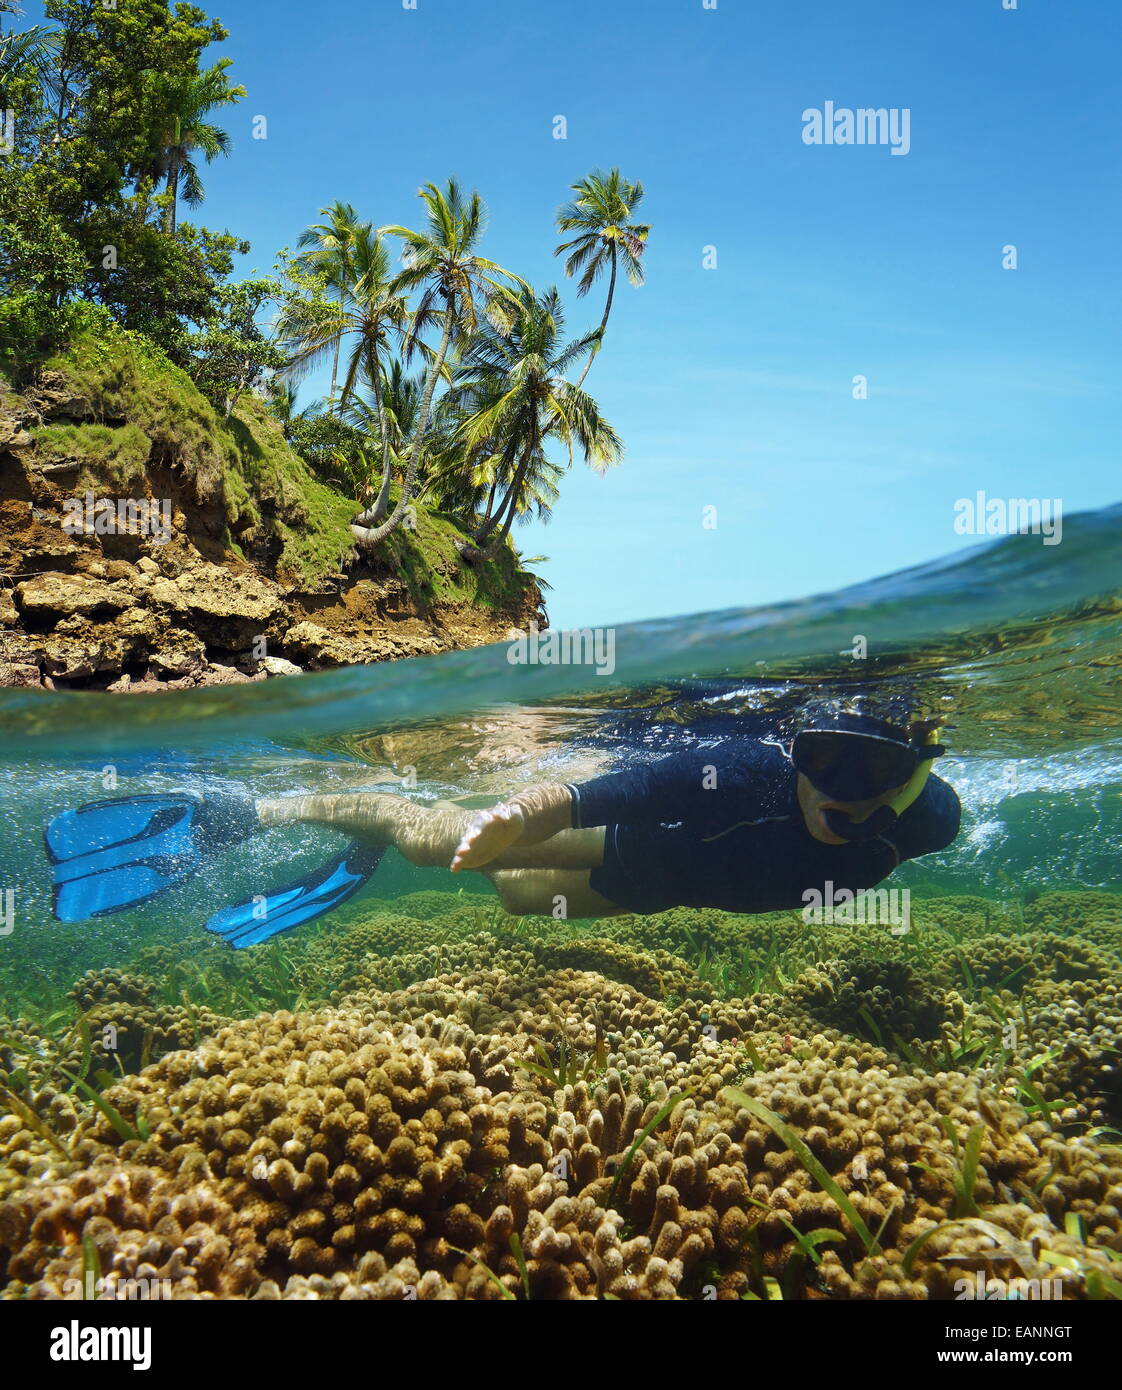 Over-sotto nel mar dei Caraibi con una snorkeler sott'acqua in un poco profondo la barriera corallina e al di sopra della superficie, isola di riva con alberi Foto Stock